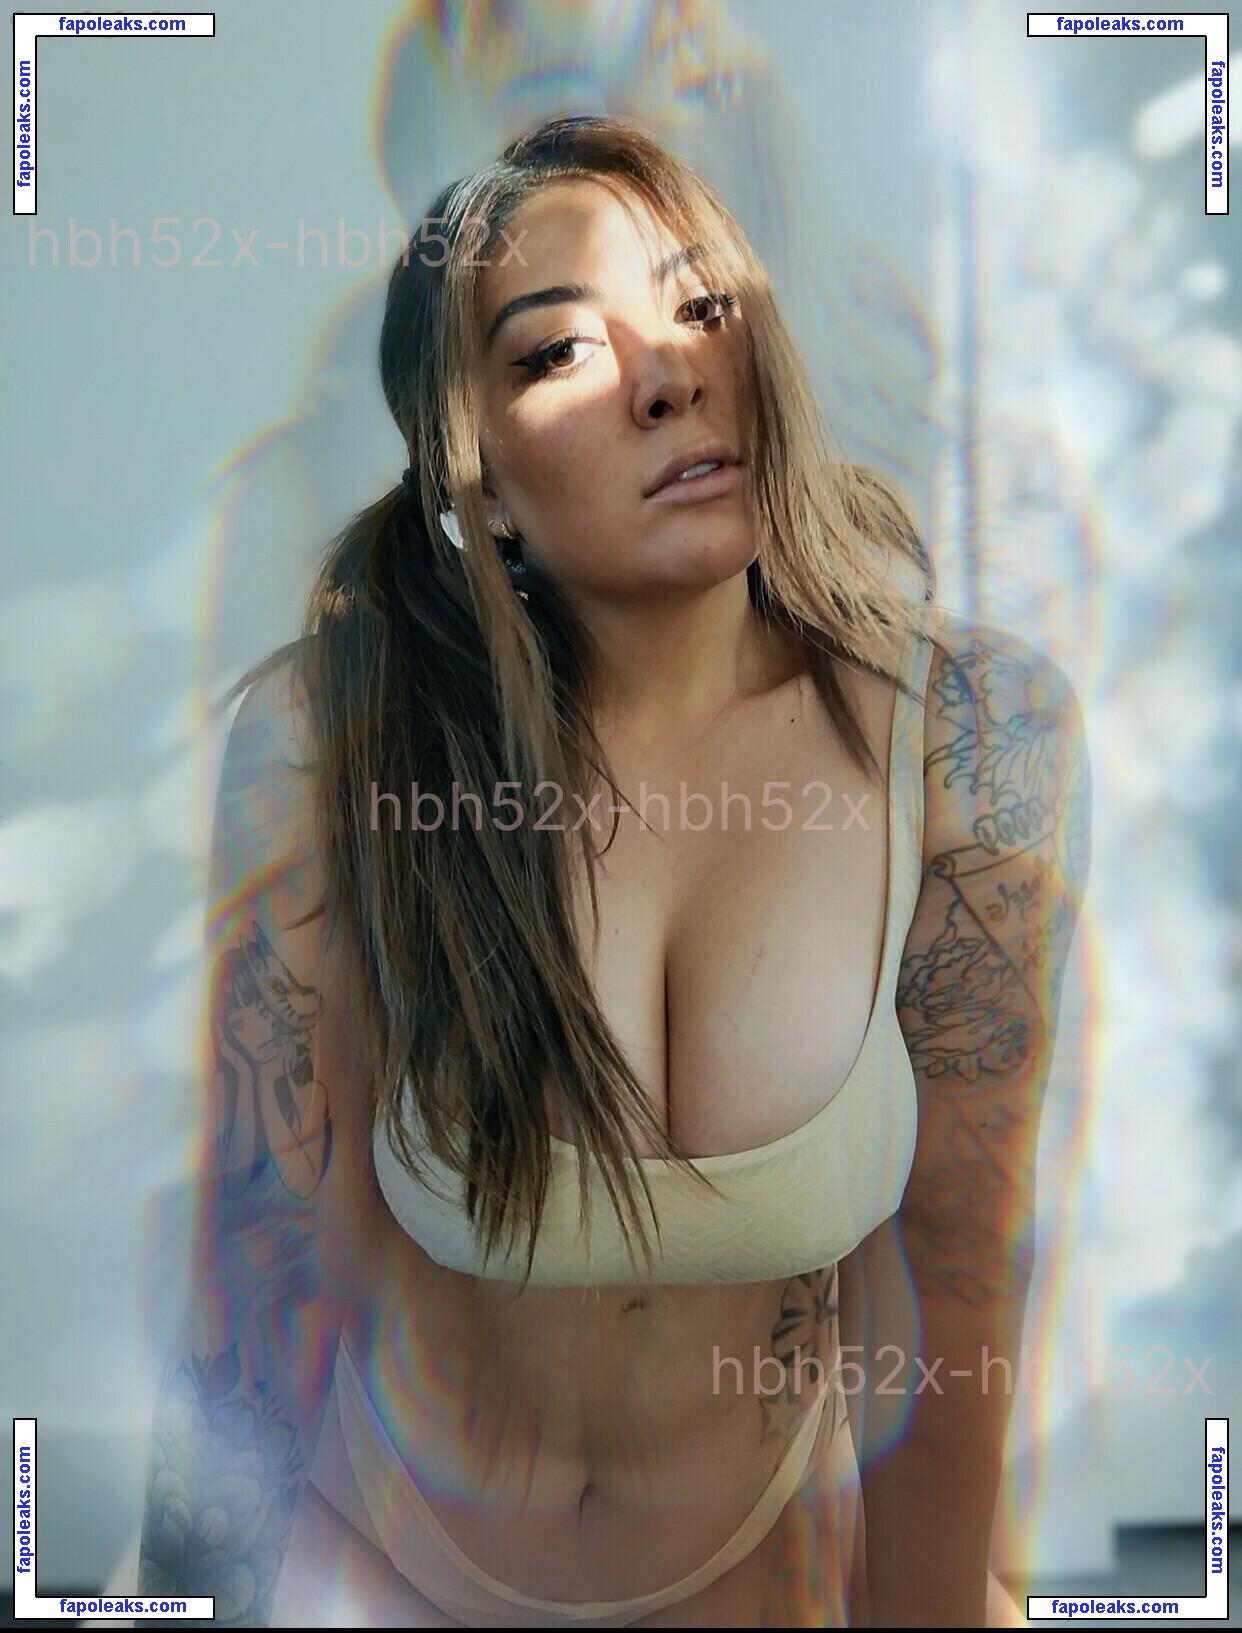 Ashlynn Arias / ashlynn / ashlynnarias nude photo #0079 from OnlyFans